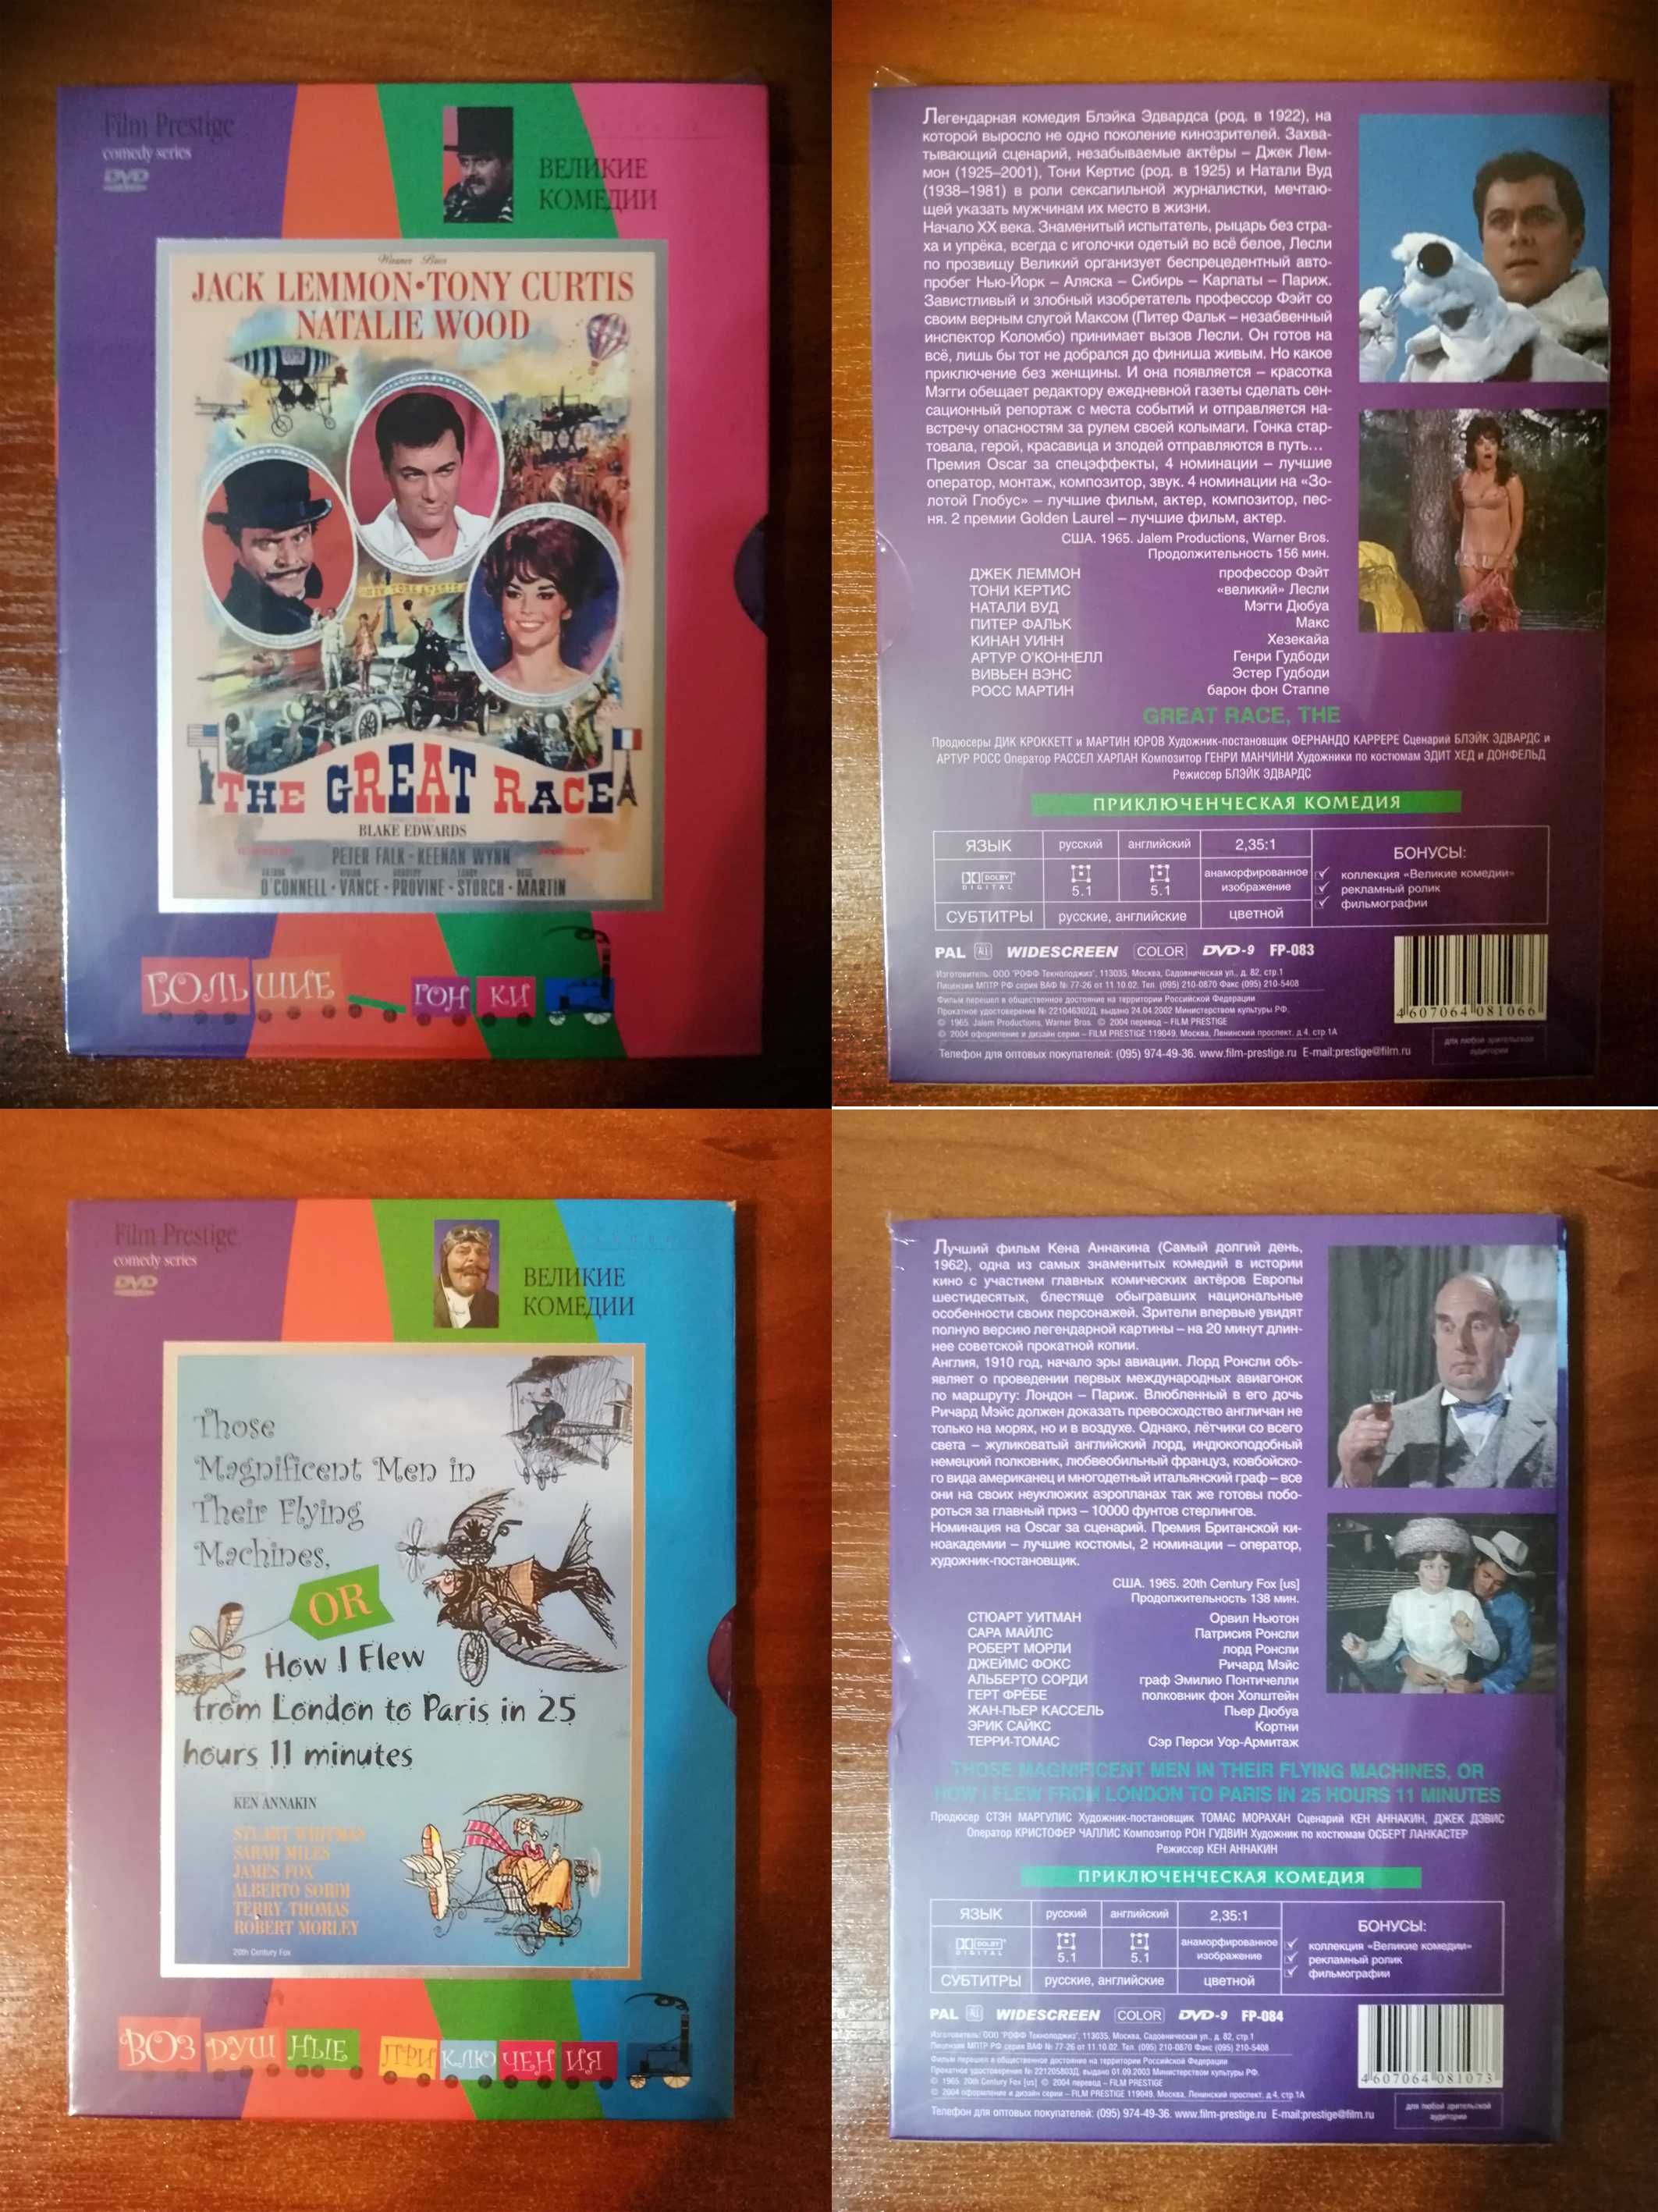 Продам оригинальные фирменные DVD R5 (для коллекционеров) №-11